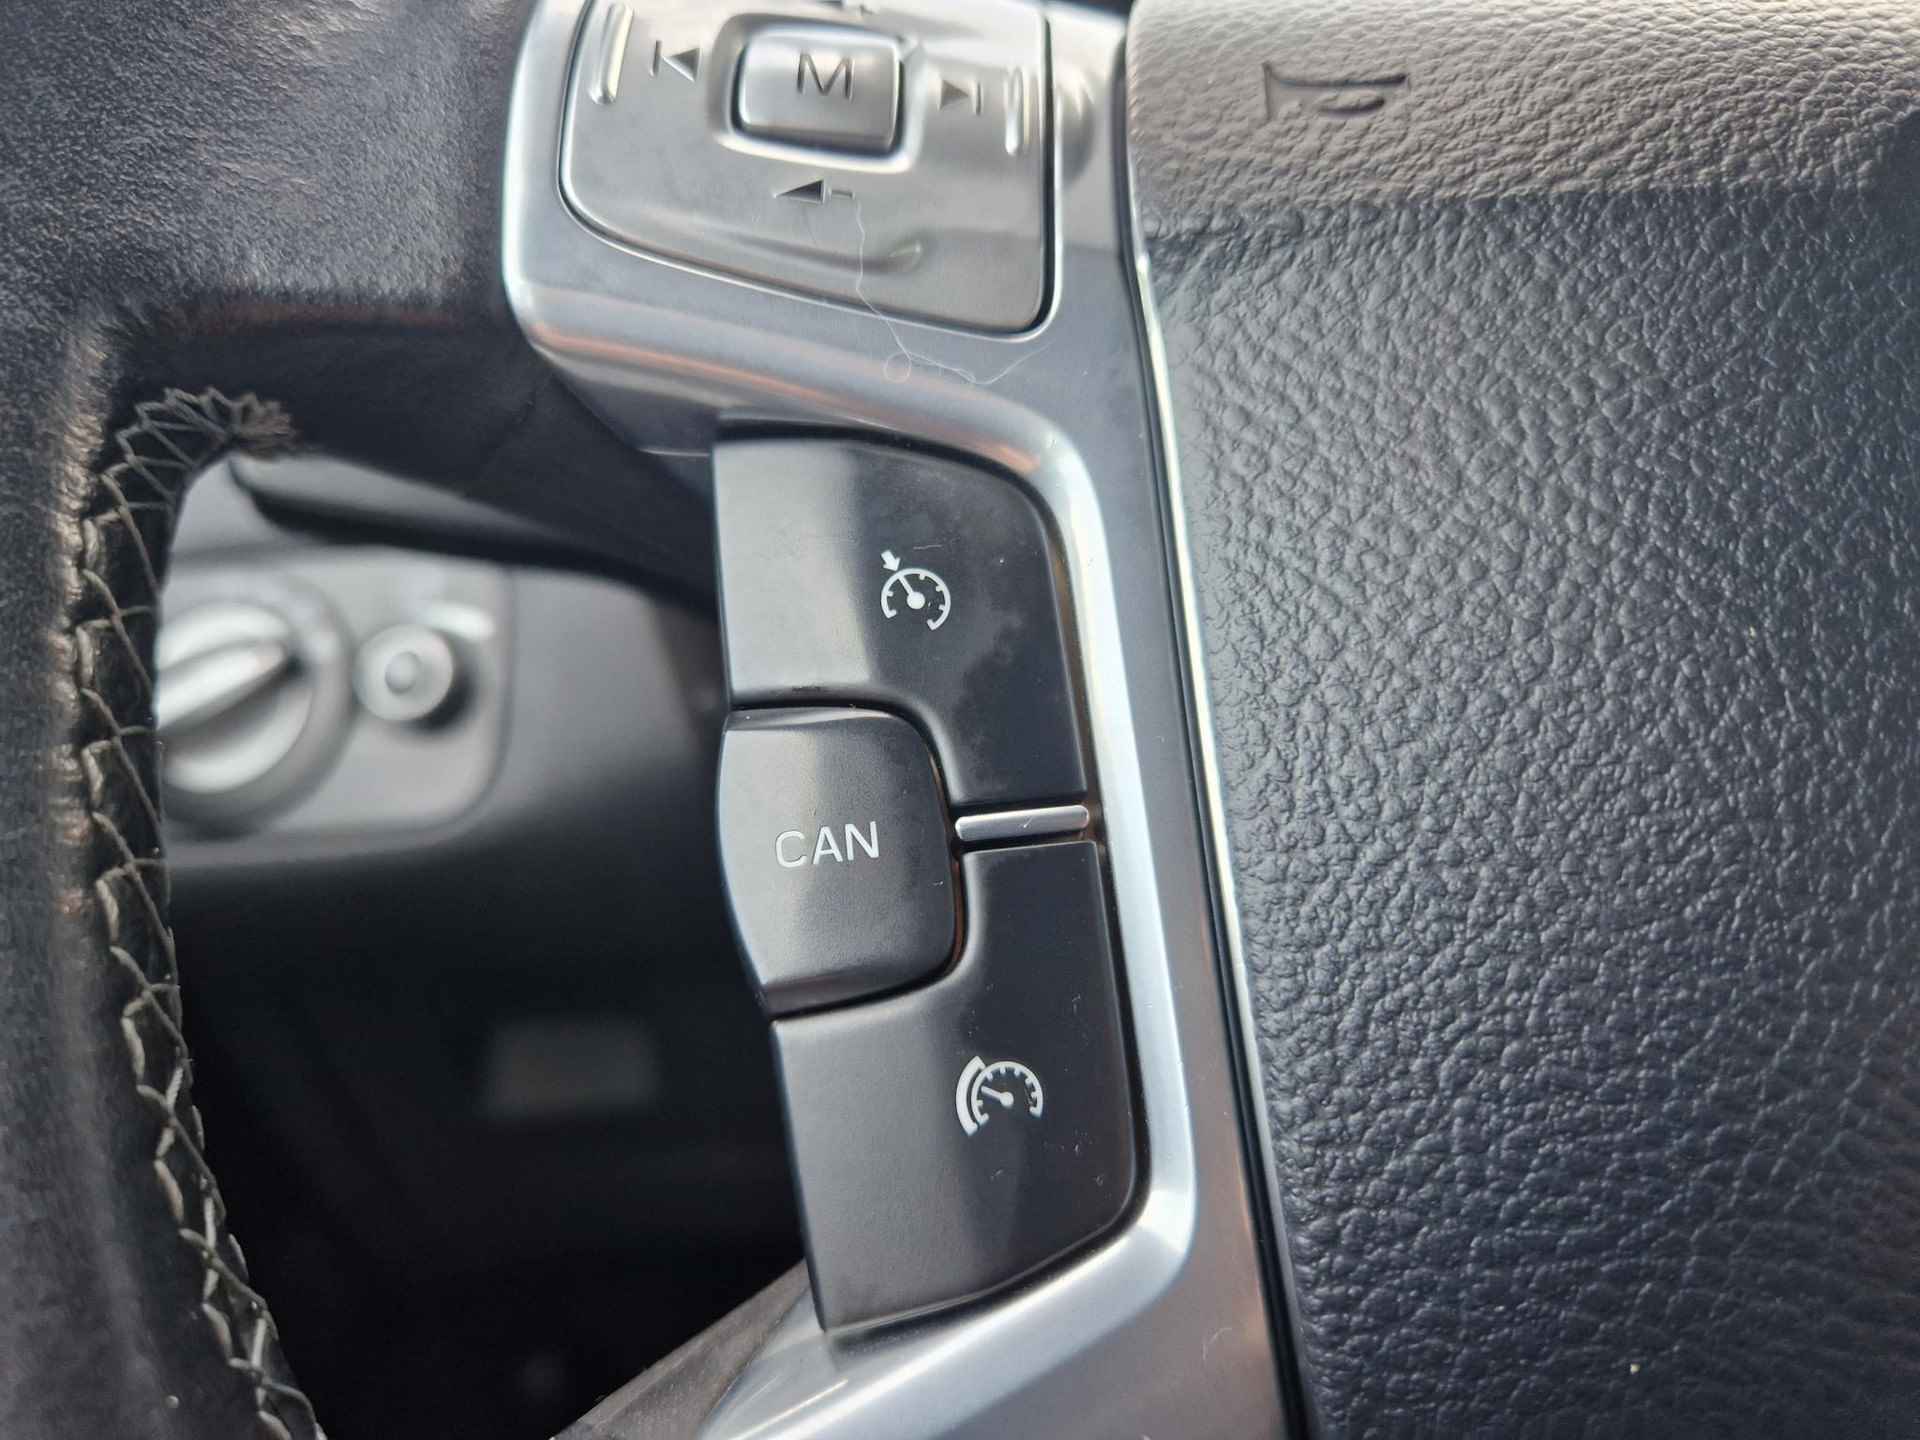 Ford Mondeo 1.6 EcoBoost Titanium 5drs hb | z.nette auto | distr.riem vv 02-2023 | Navi |trekhaak | cruise - 12/19